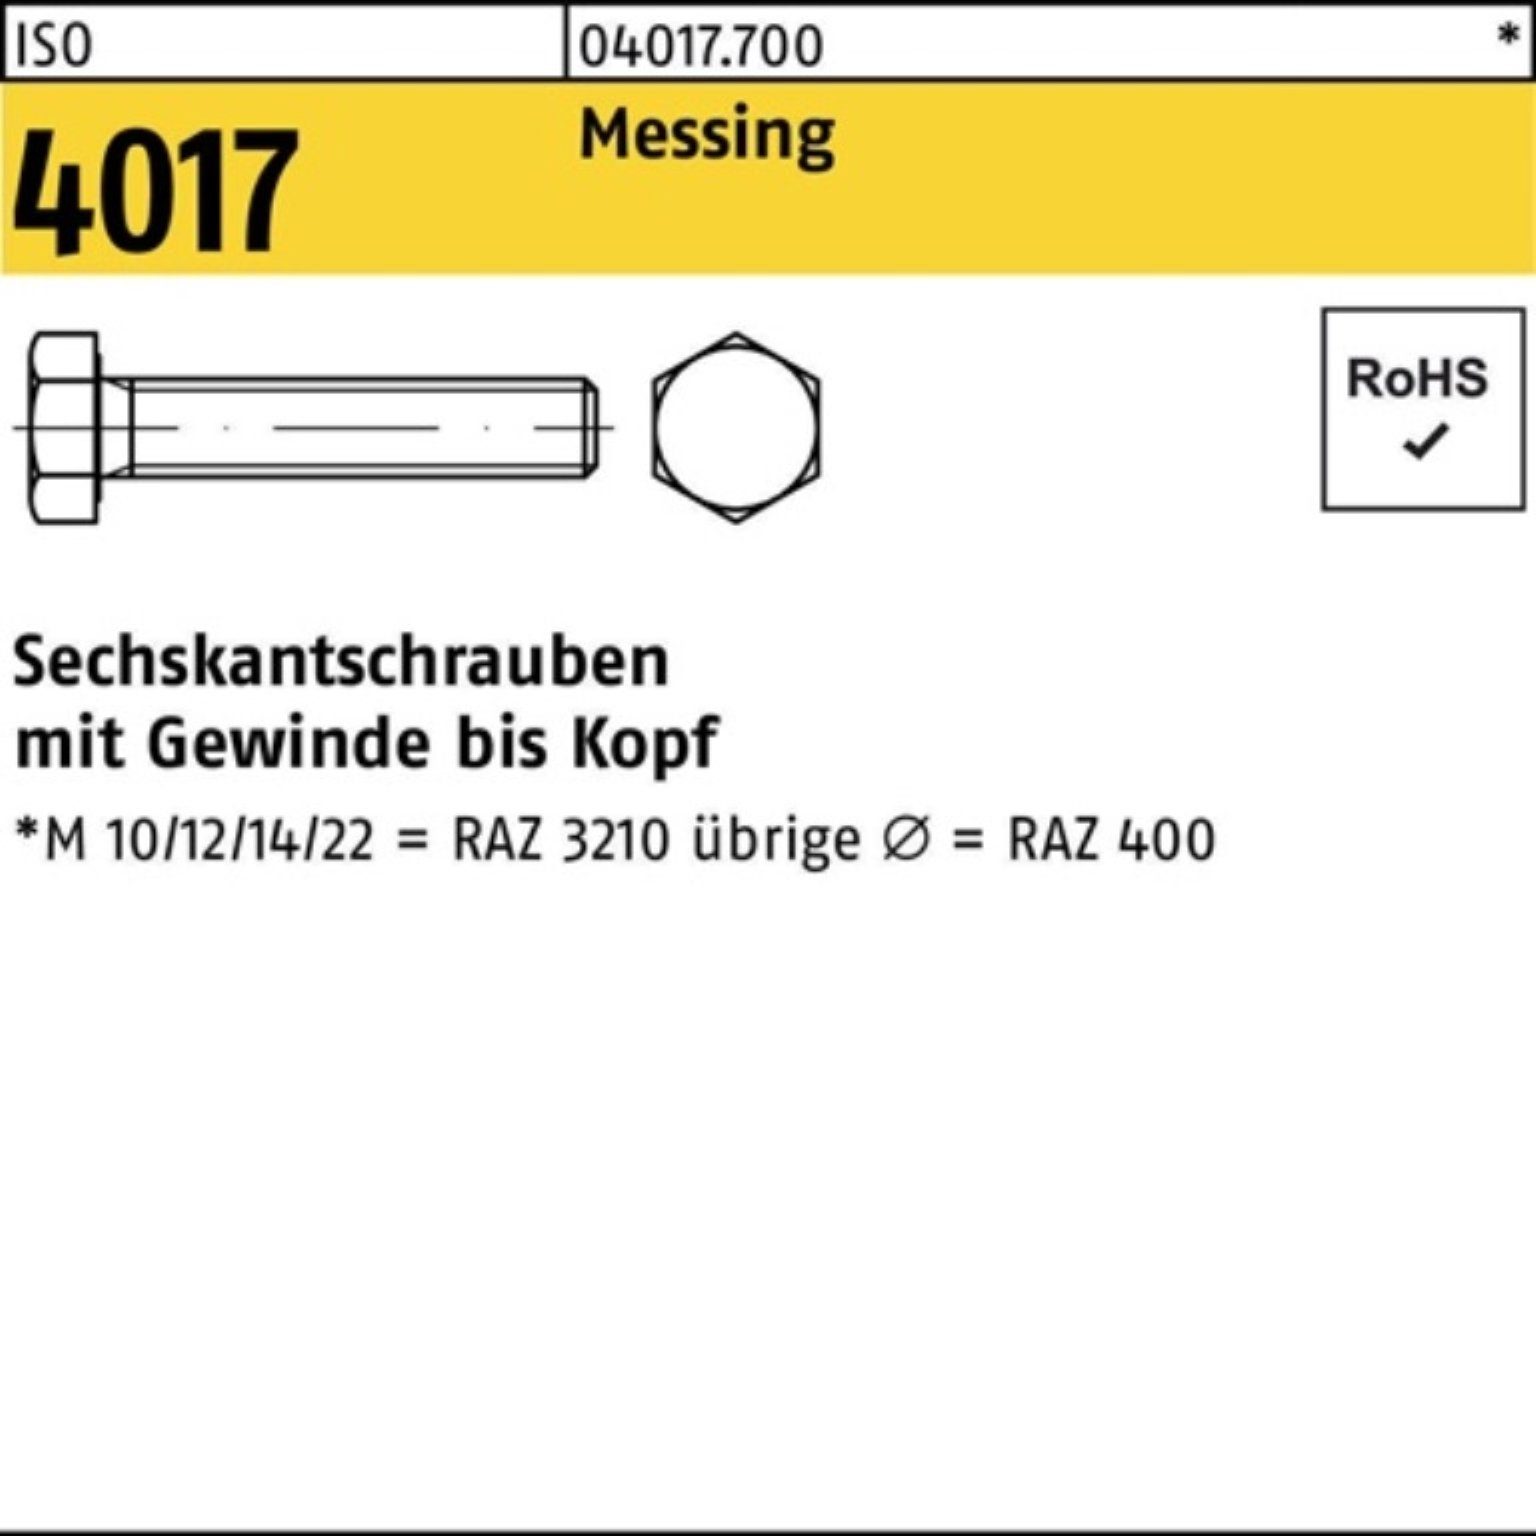 Bufab Sechskantschraube 100er Pack Sechskantschraube VG ISO 100 8 M4x 4017 ISO Messing Stück